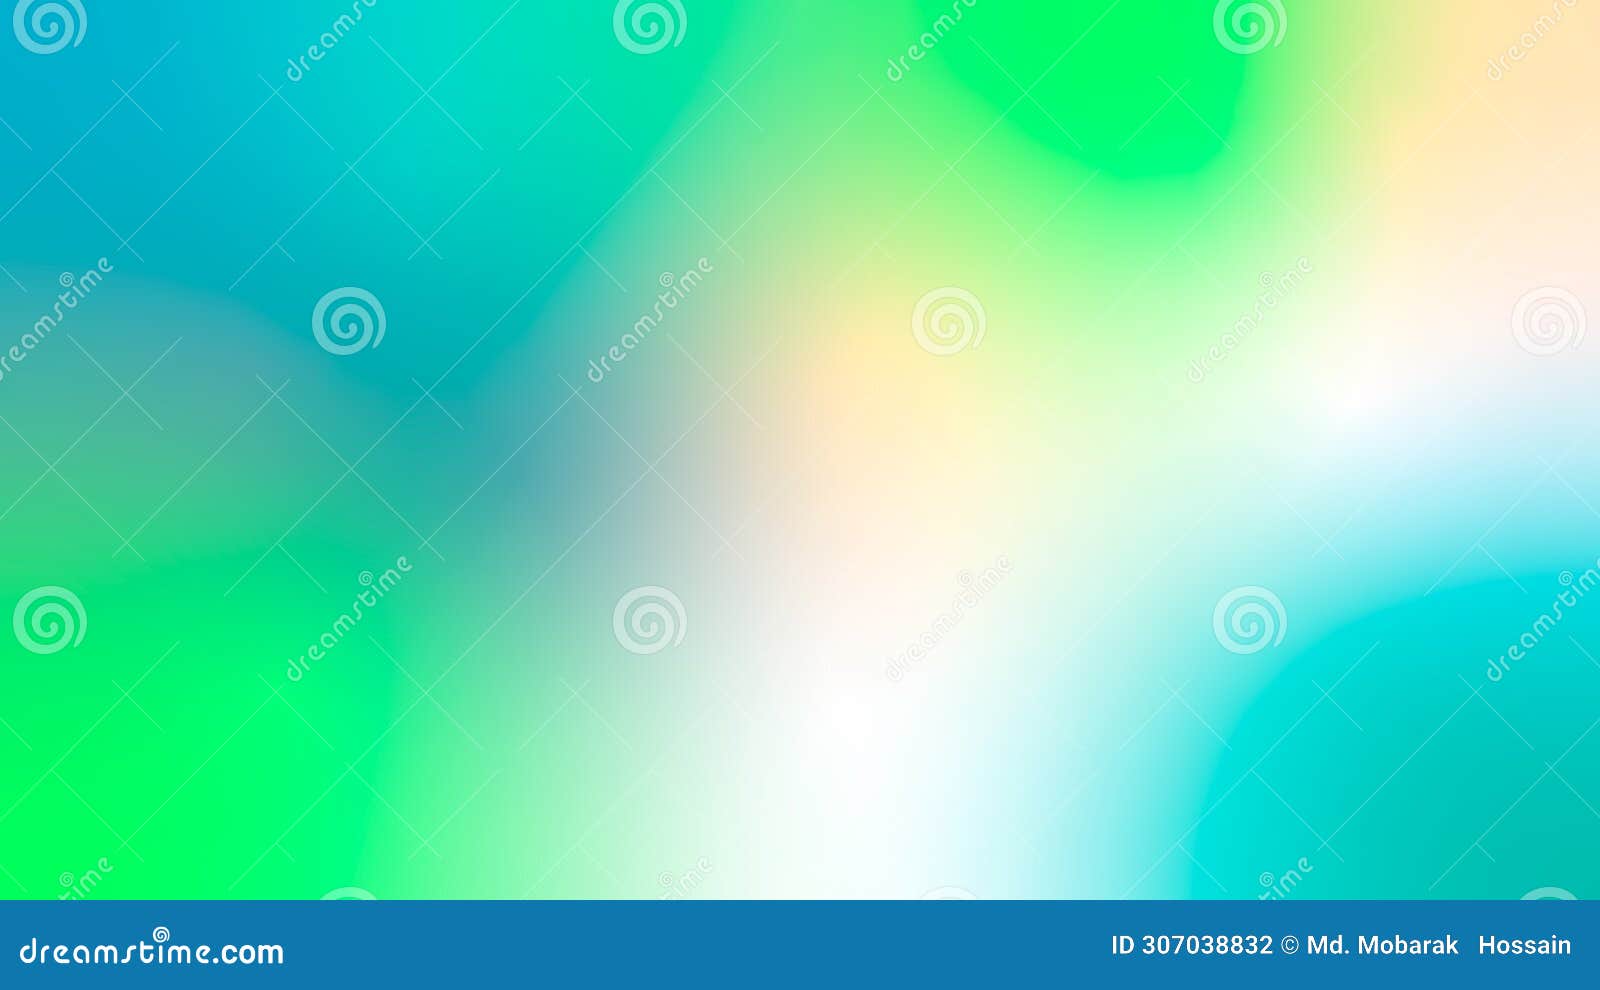 green, blue, pantone, azureish white, robin egg blue, bubbles color gradient background